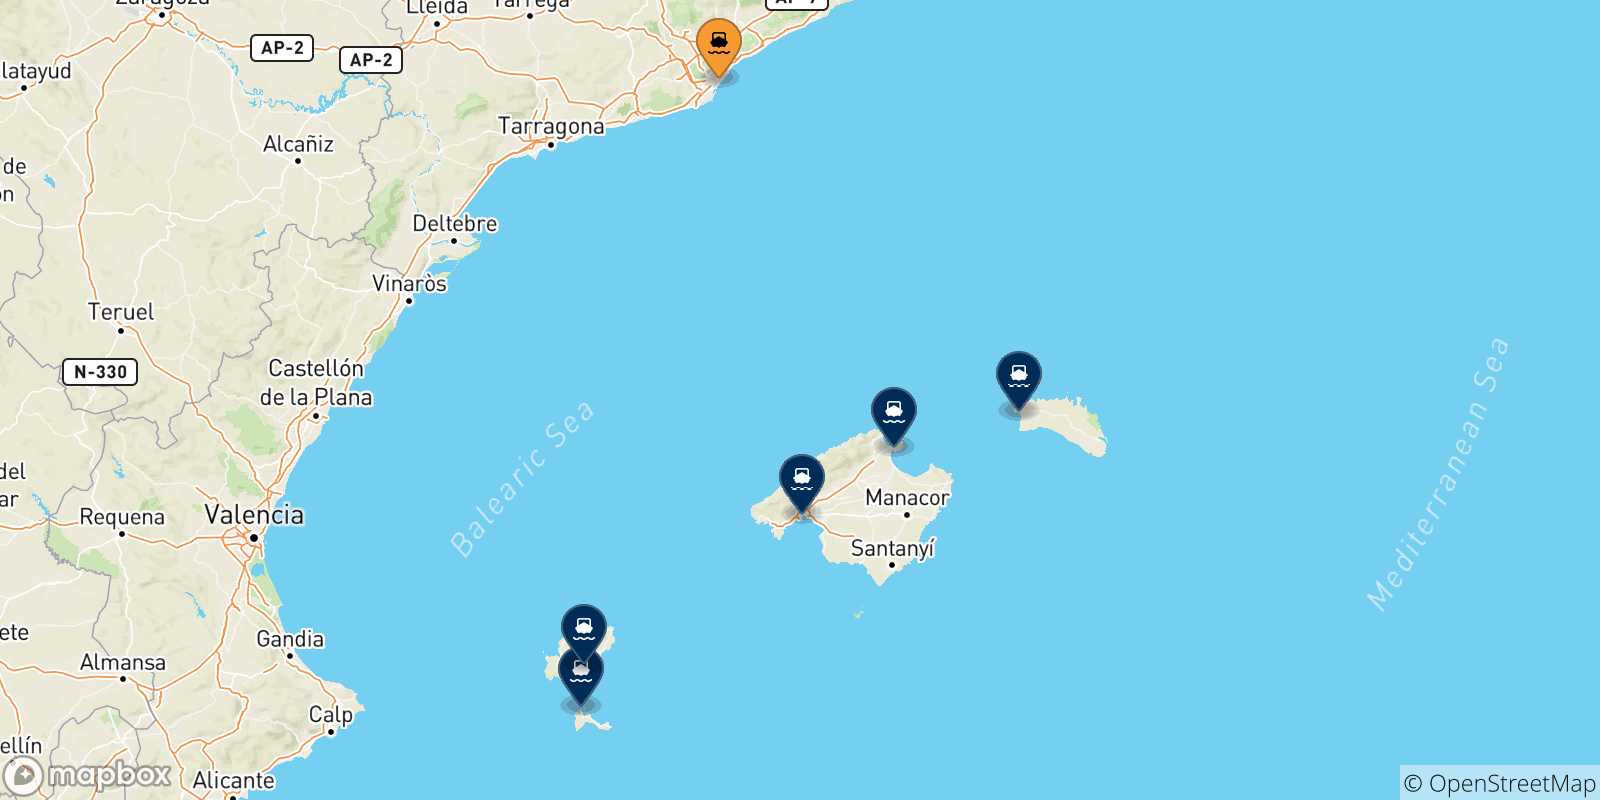 Mappa delle possibili rotte tra Barcellona e le Isole Baleari